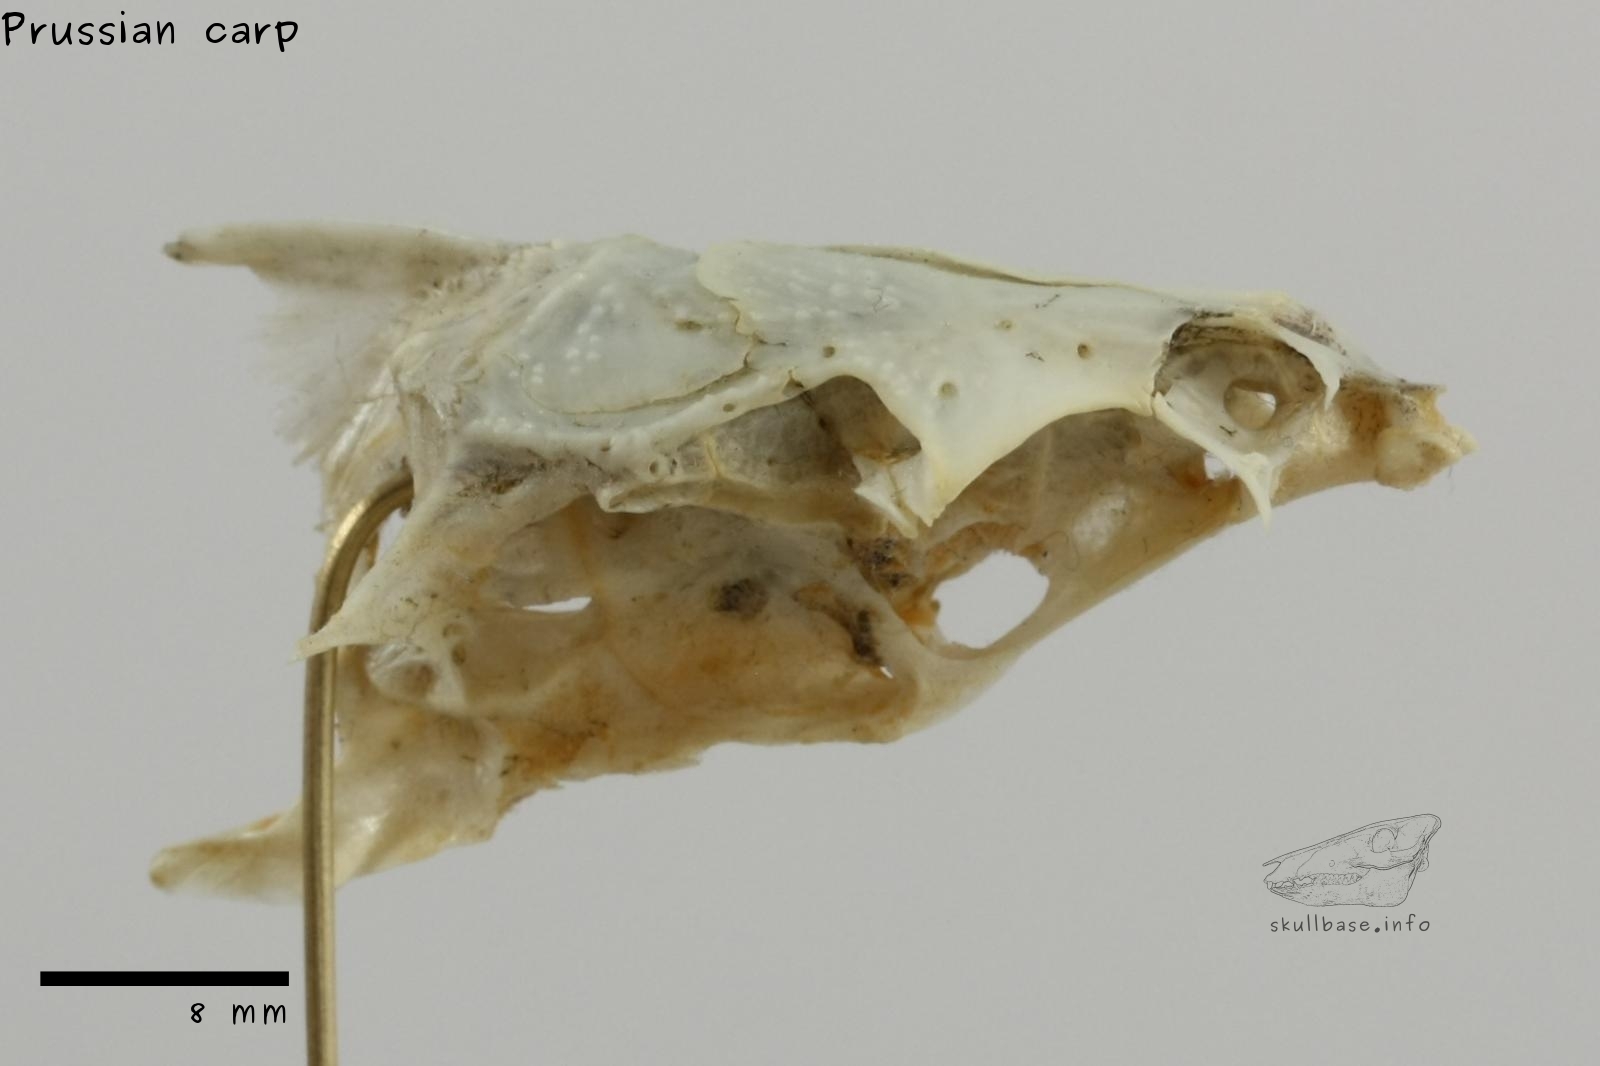 Prussian carp (Carassius gibelio) neurocranium lateral view